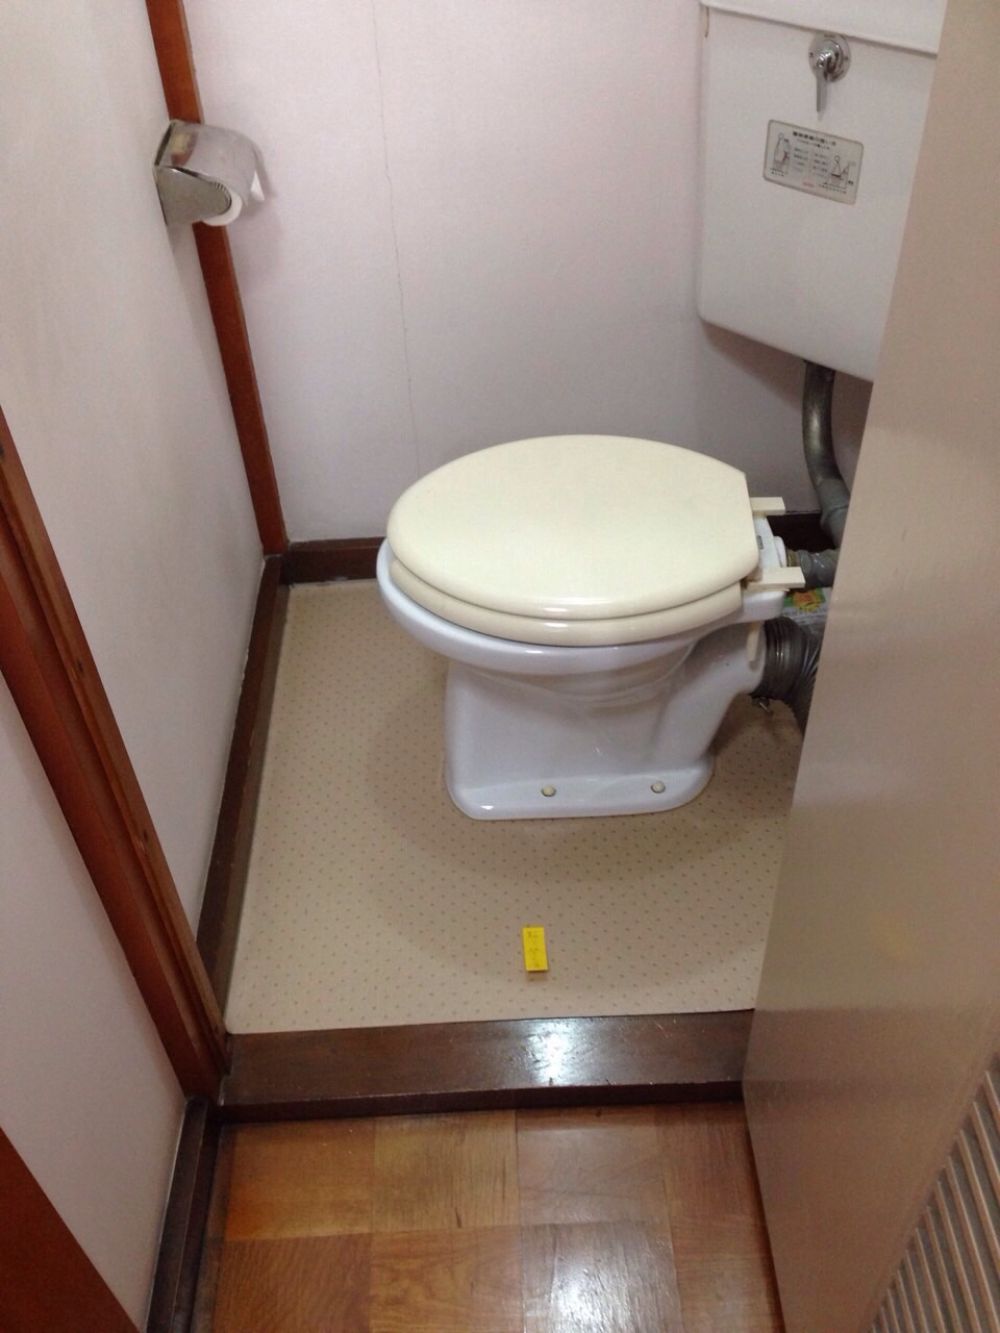 アパートのトイレ便器の交換 水漏れあり リフォームのことなら家仲間コム